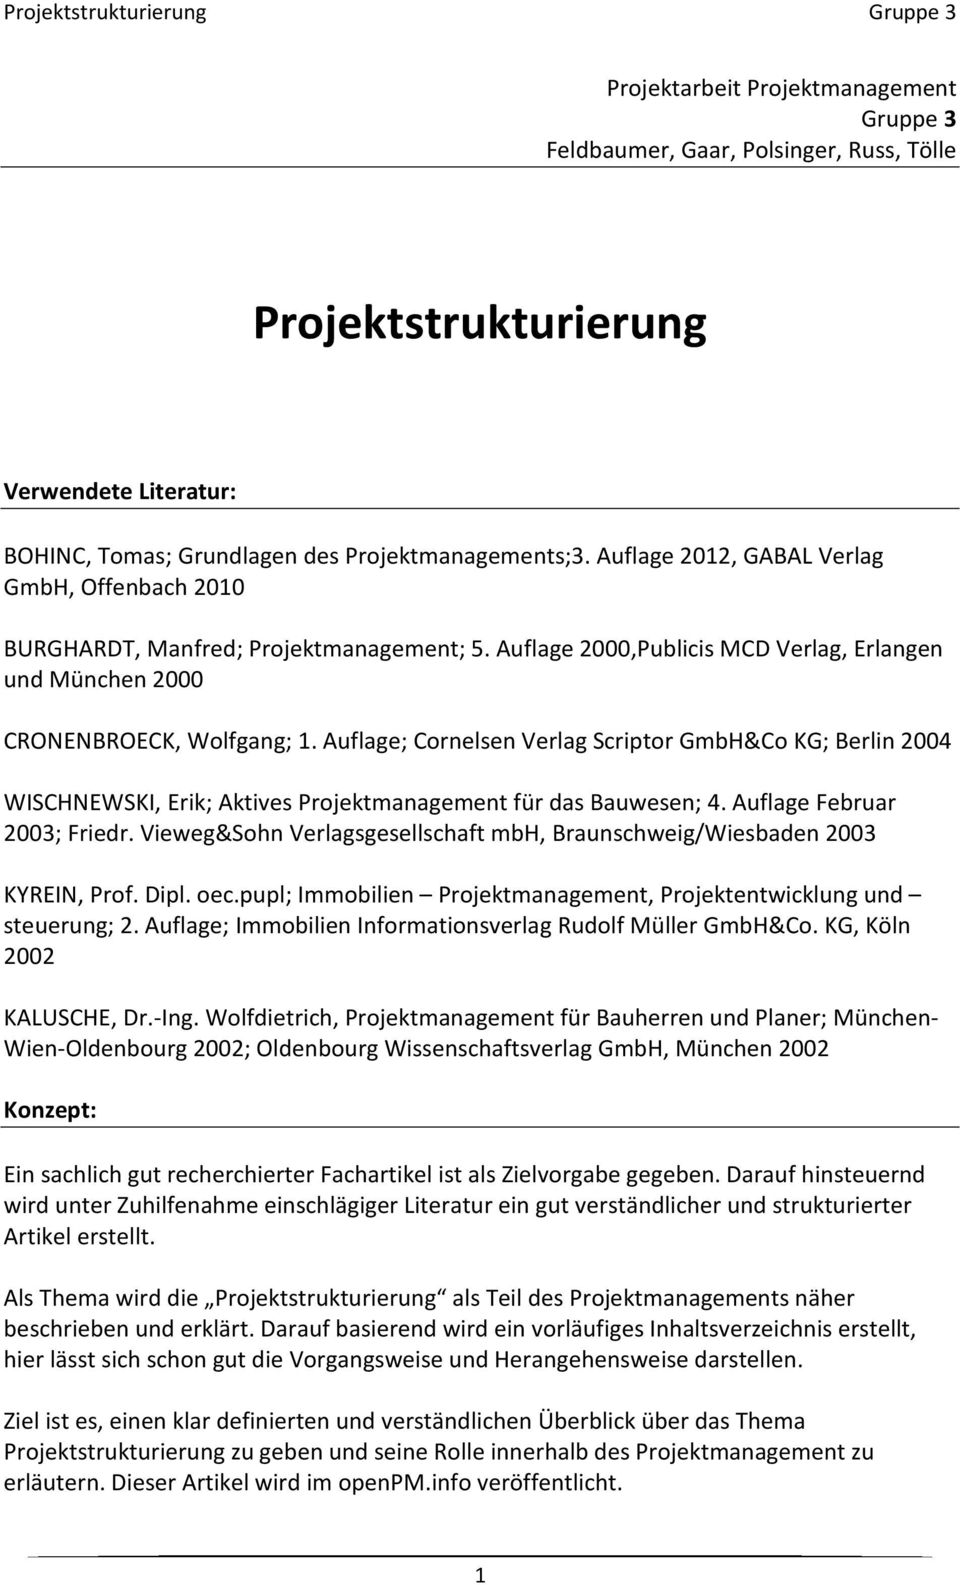 Auflage; Cornelsen Verlag Scriptor GmbH&Co KG; Berlin 2004 WISCHNEWSKI, Erik; Aktives Projektmanagement für das Bauwesen; 4. Auflage Februar 2003; Friedr.